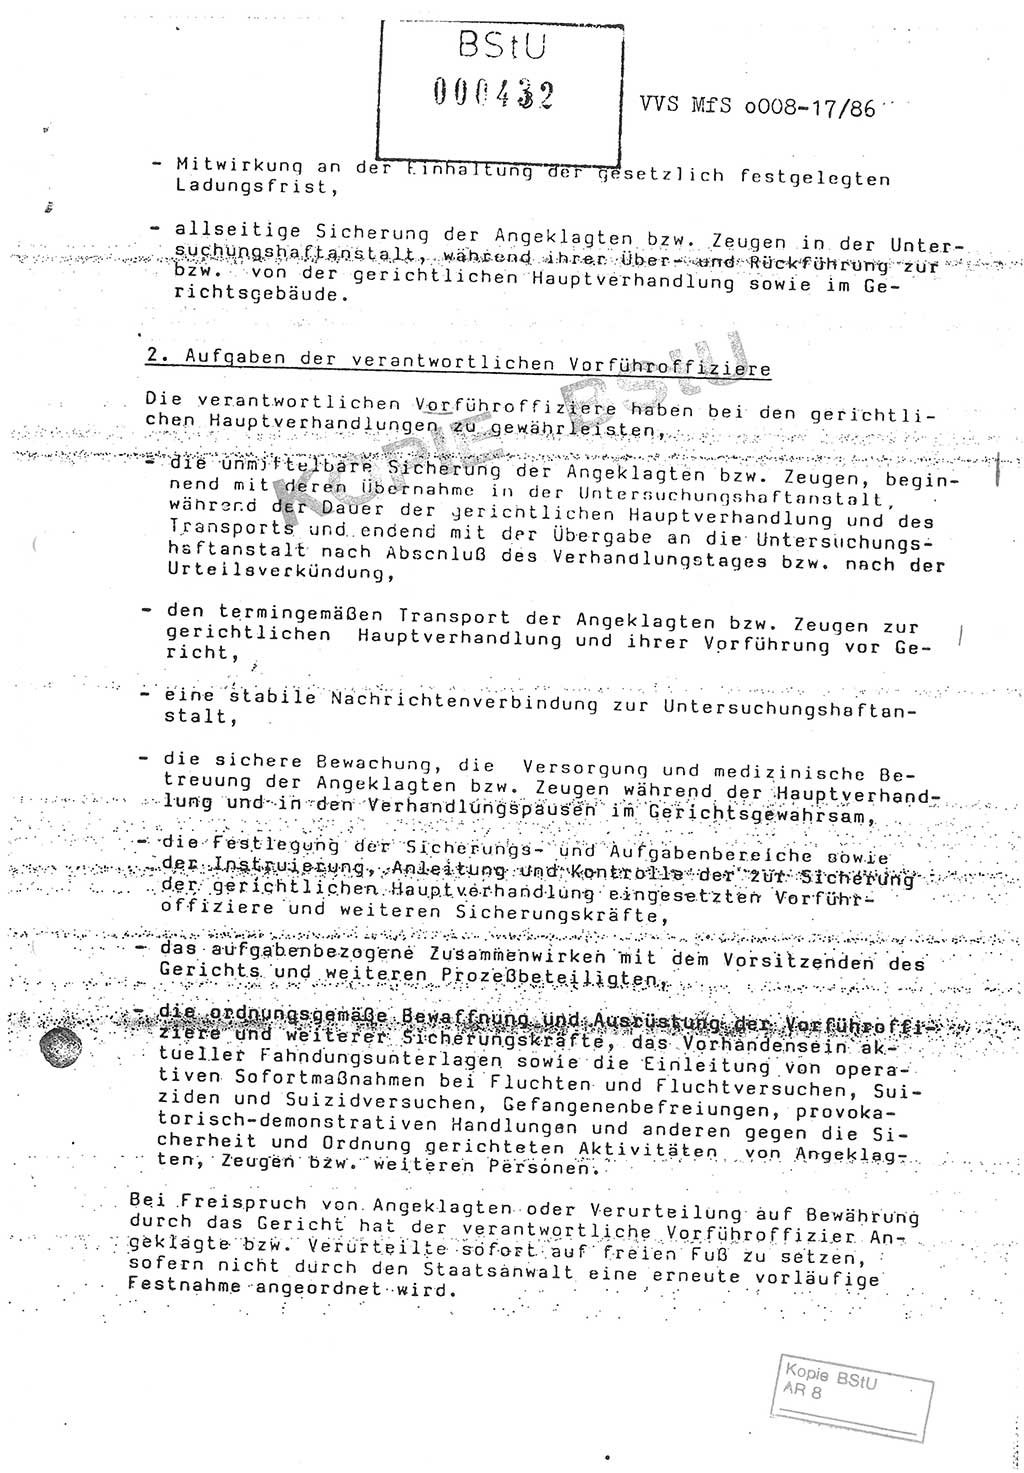 Anweisung Nr. 3/86 zur Sicherung bei den Vorführungen zu gerichtlichen Hauptverhandlungen durch Angehörige der Abteilungen ⅩⅣ, Vorführanweisung, Ministerium für Staatssicherheit (MfS) [Deutsche Demokratische Republik (DDR)], Abteilung ⅩⅣ, Leiter, Vertrauliche Verschlußsache (VVS) o008-17/86, Berlin, 29.1.1986, Seite 3 (Anw. 3/86 MfS DDR Abt. ⅩⅣ Ltr. VVS o008-17/86 1986, S. 3)